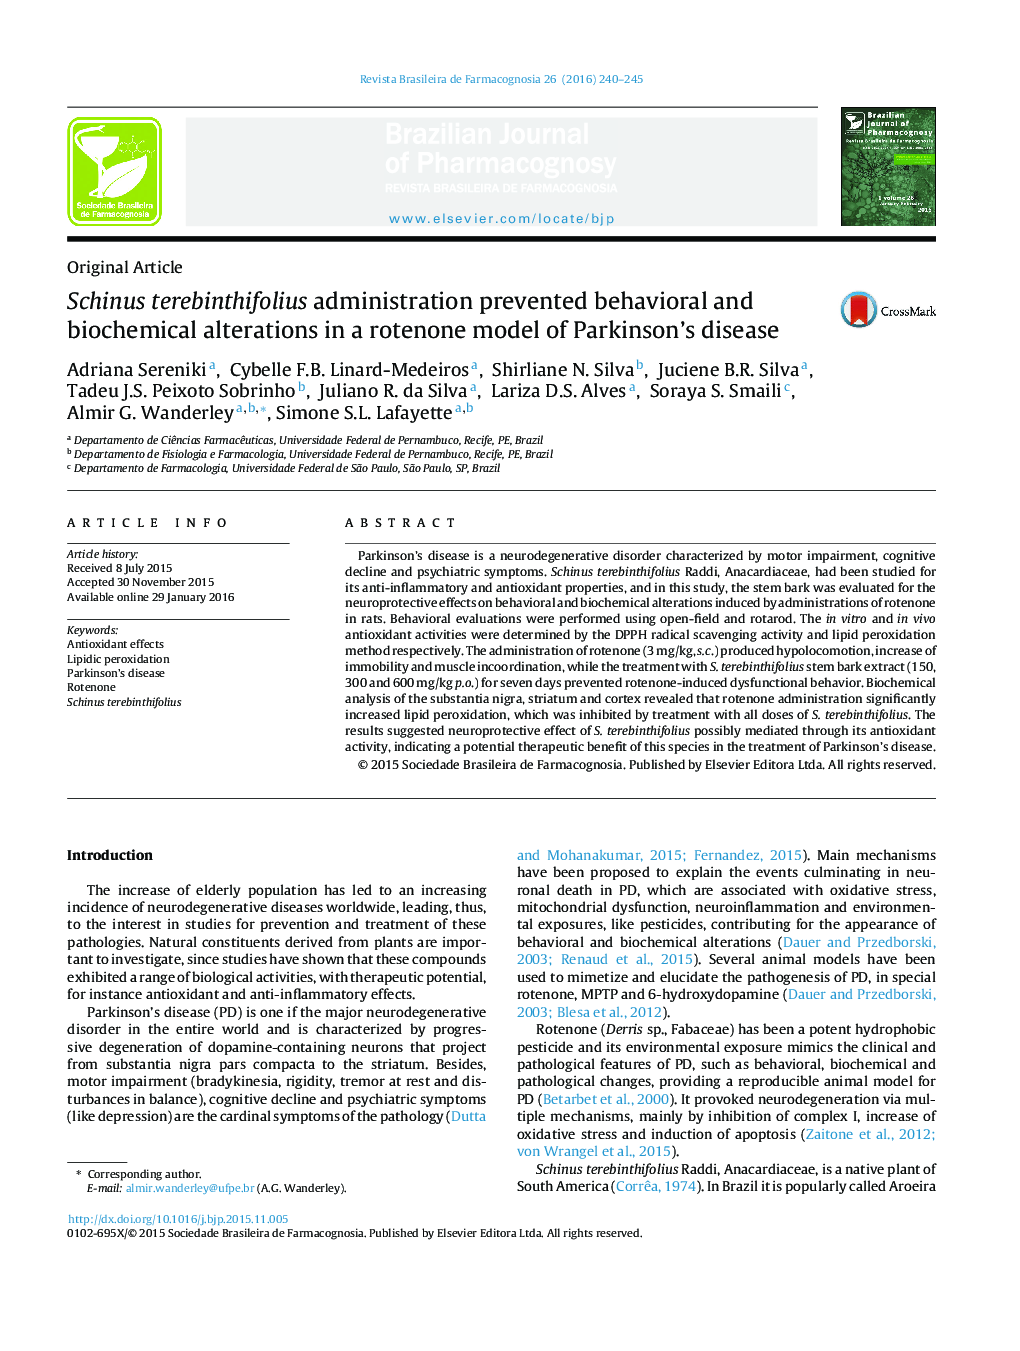 مدیریت Schinus terebinthifolius مانع تغییرات رفتاری و بیوشیمیایی در یک مدل روتنون از بیماری پارکینسون